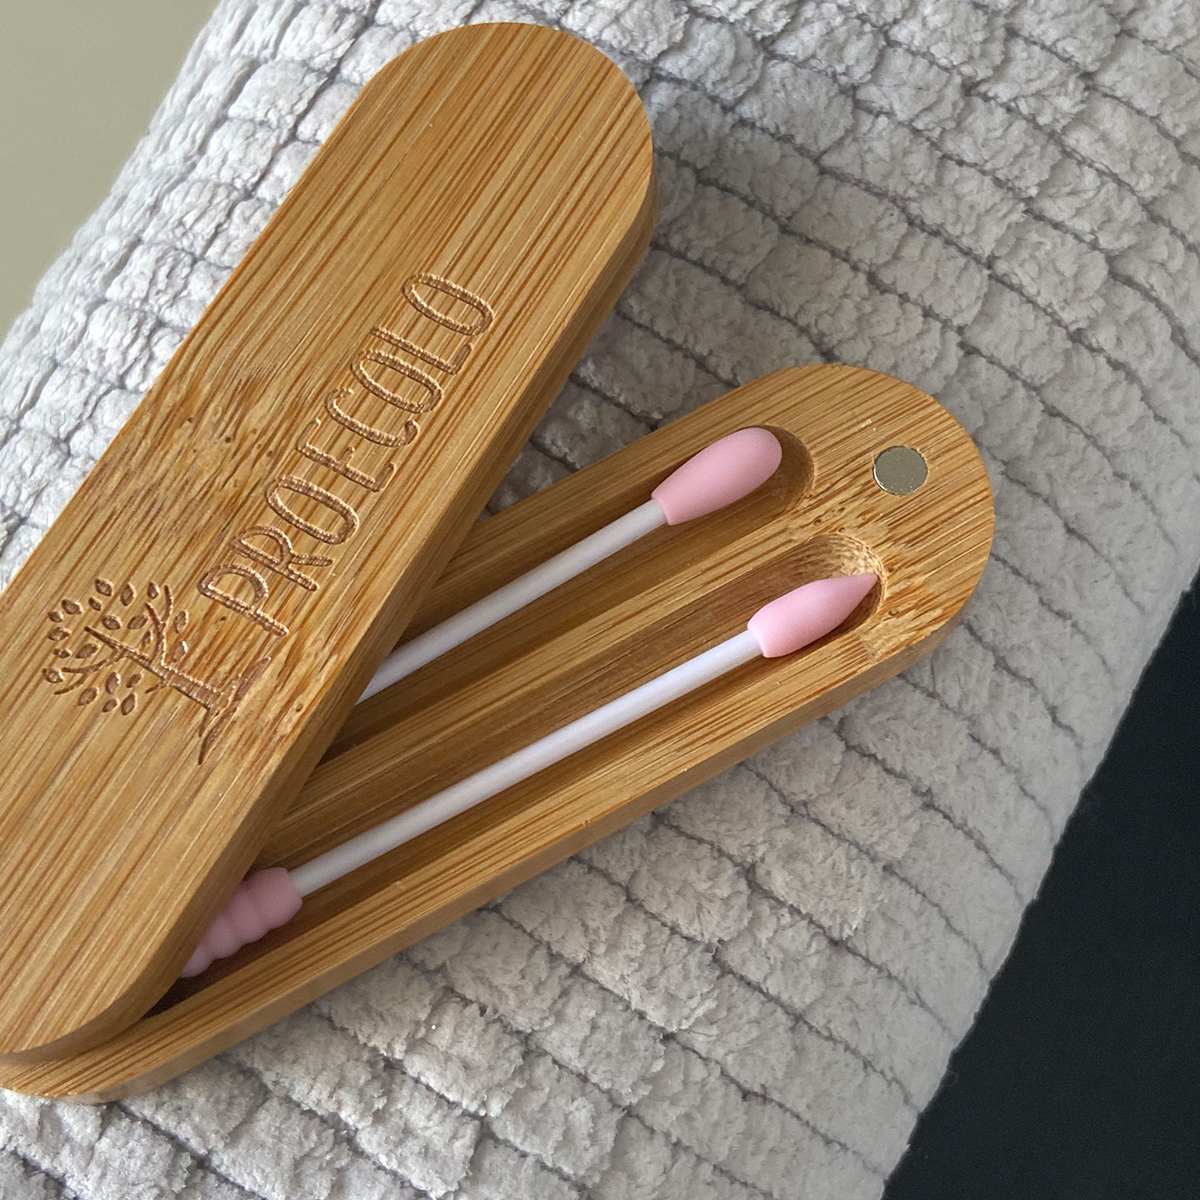 Sunydog-Coton-tiges en Silicone bâton réutilisable Portable et nettoyable  Oreille Coton-Tige à Friction Rugueuse pour Le Nettoyage des Oreilles